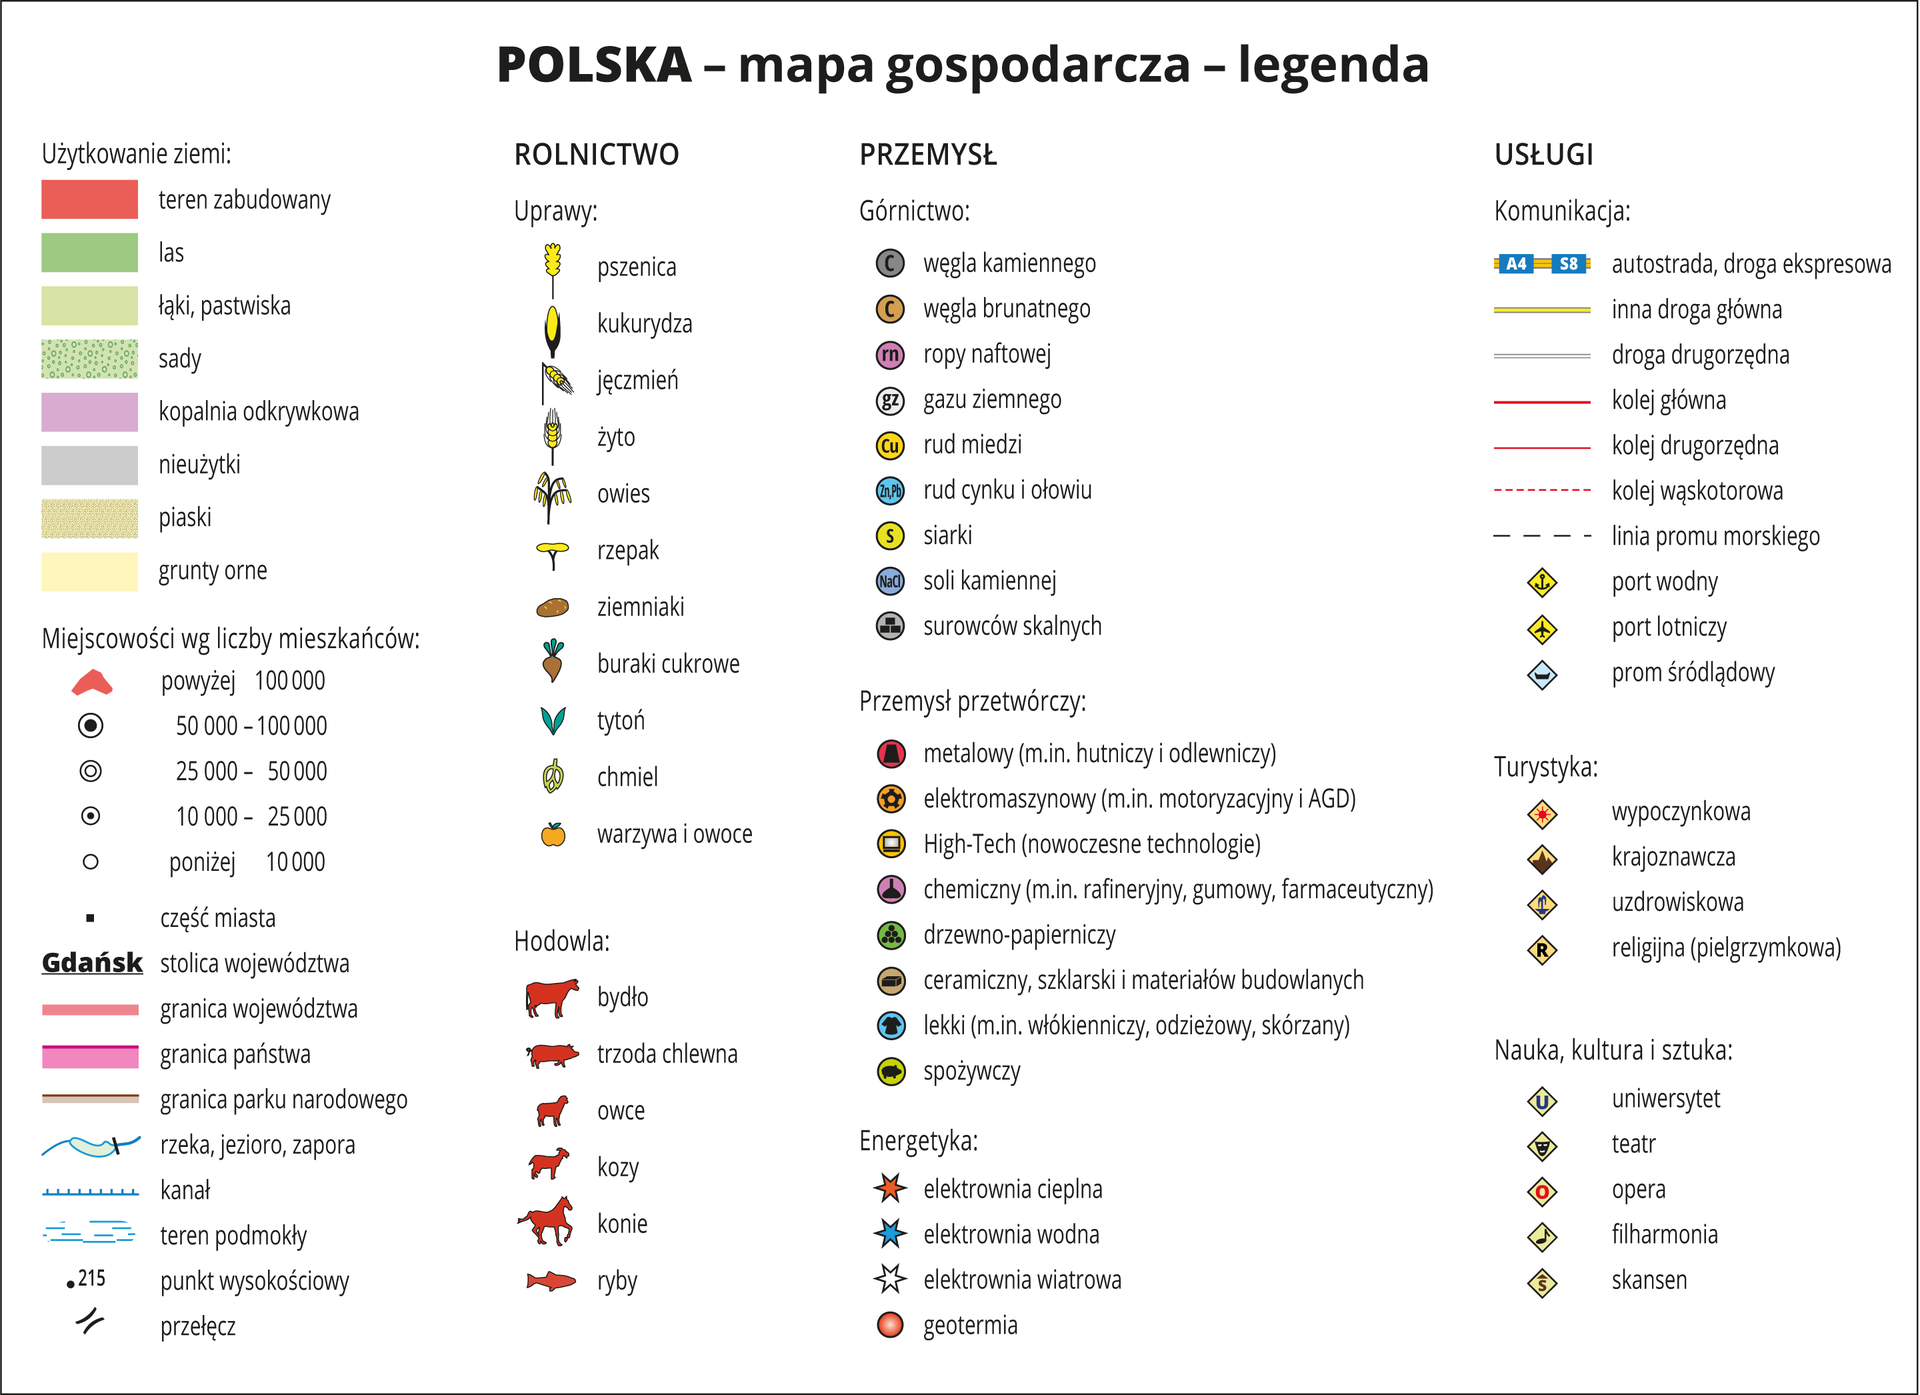 Ilustracja przedstawia legendę do map gospodarczych poszczególnych regionów Polski.